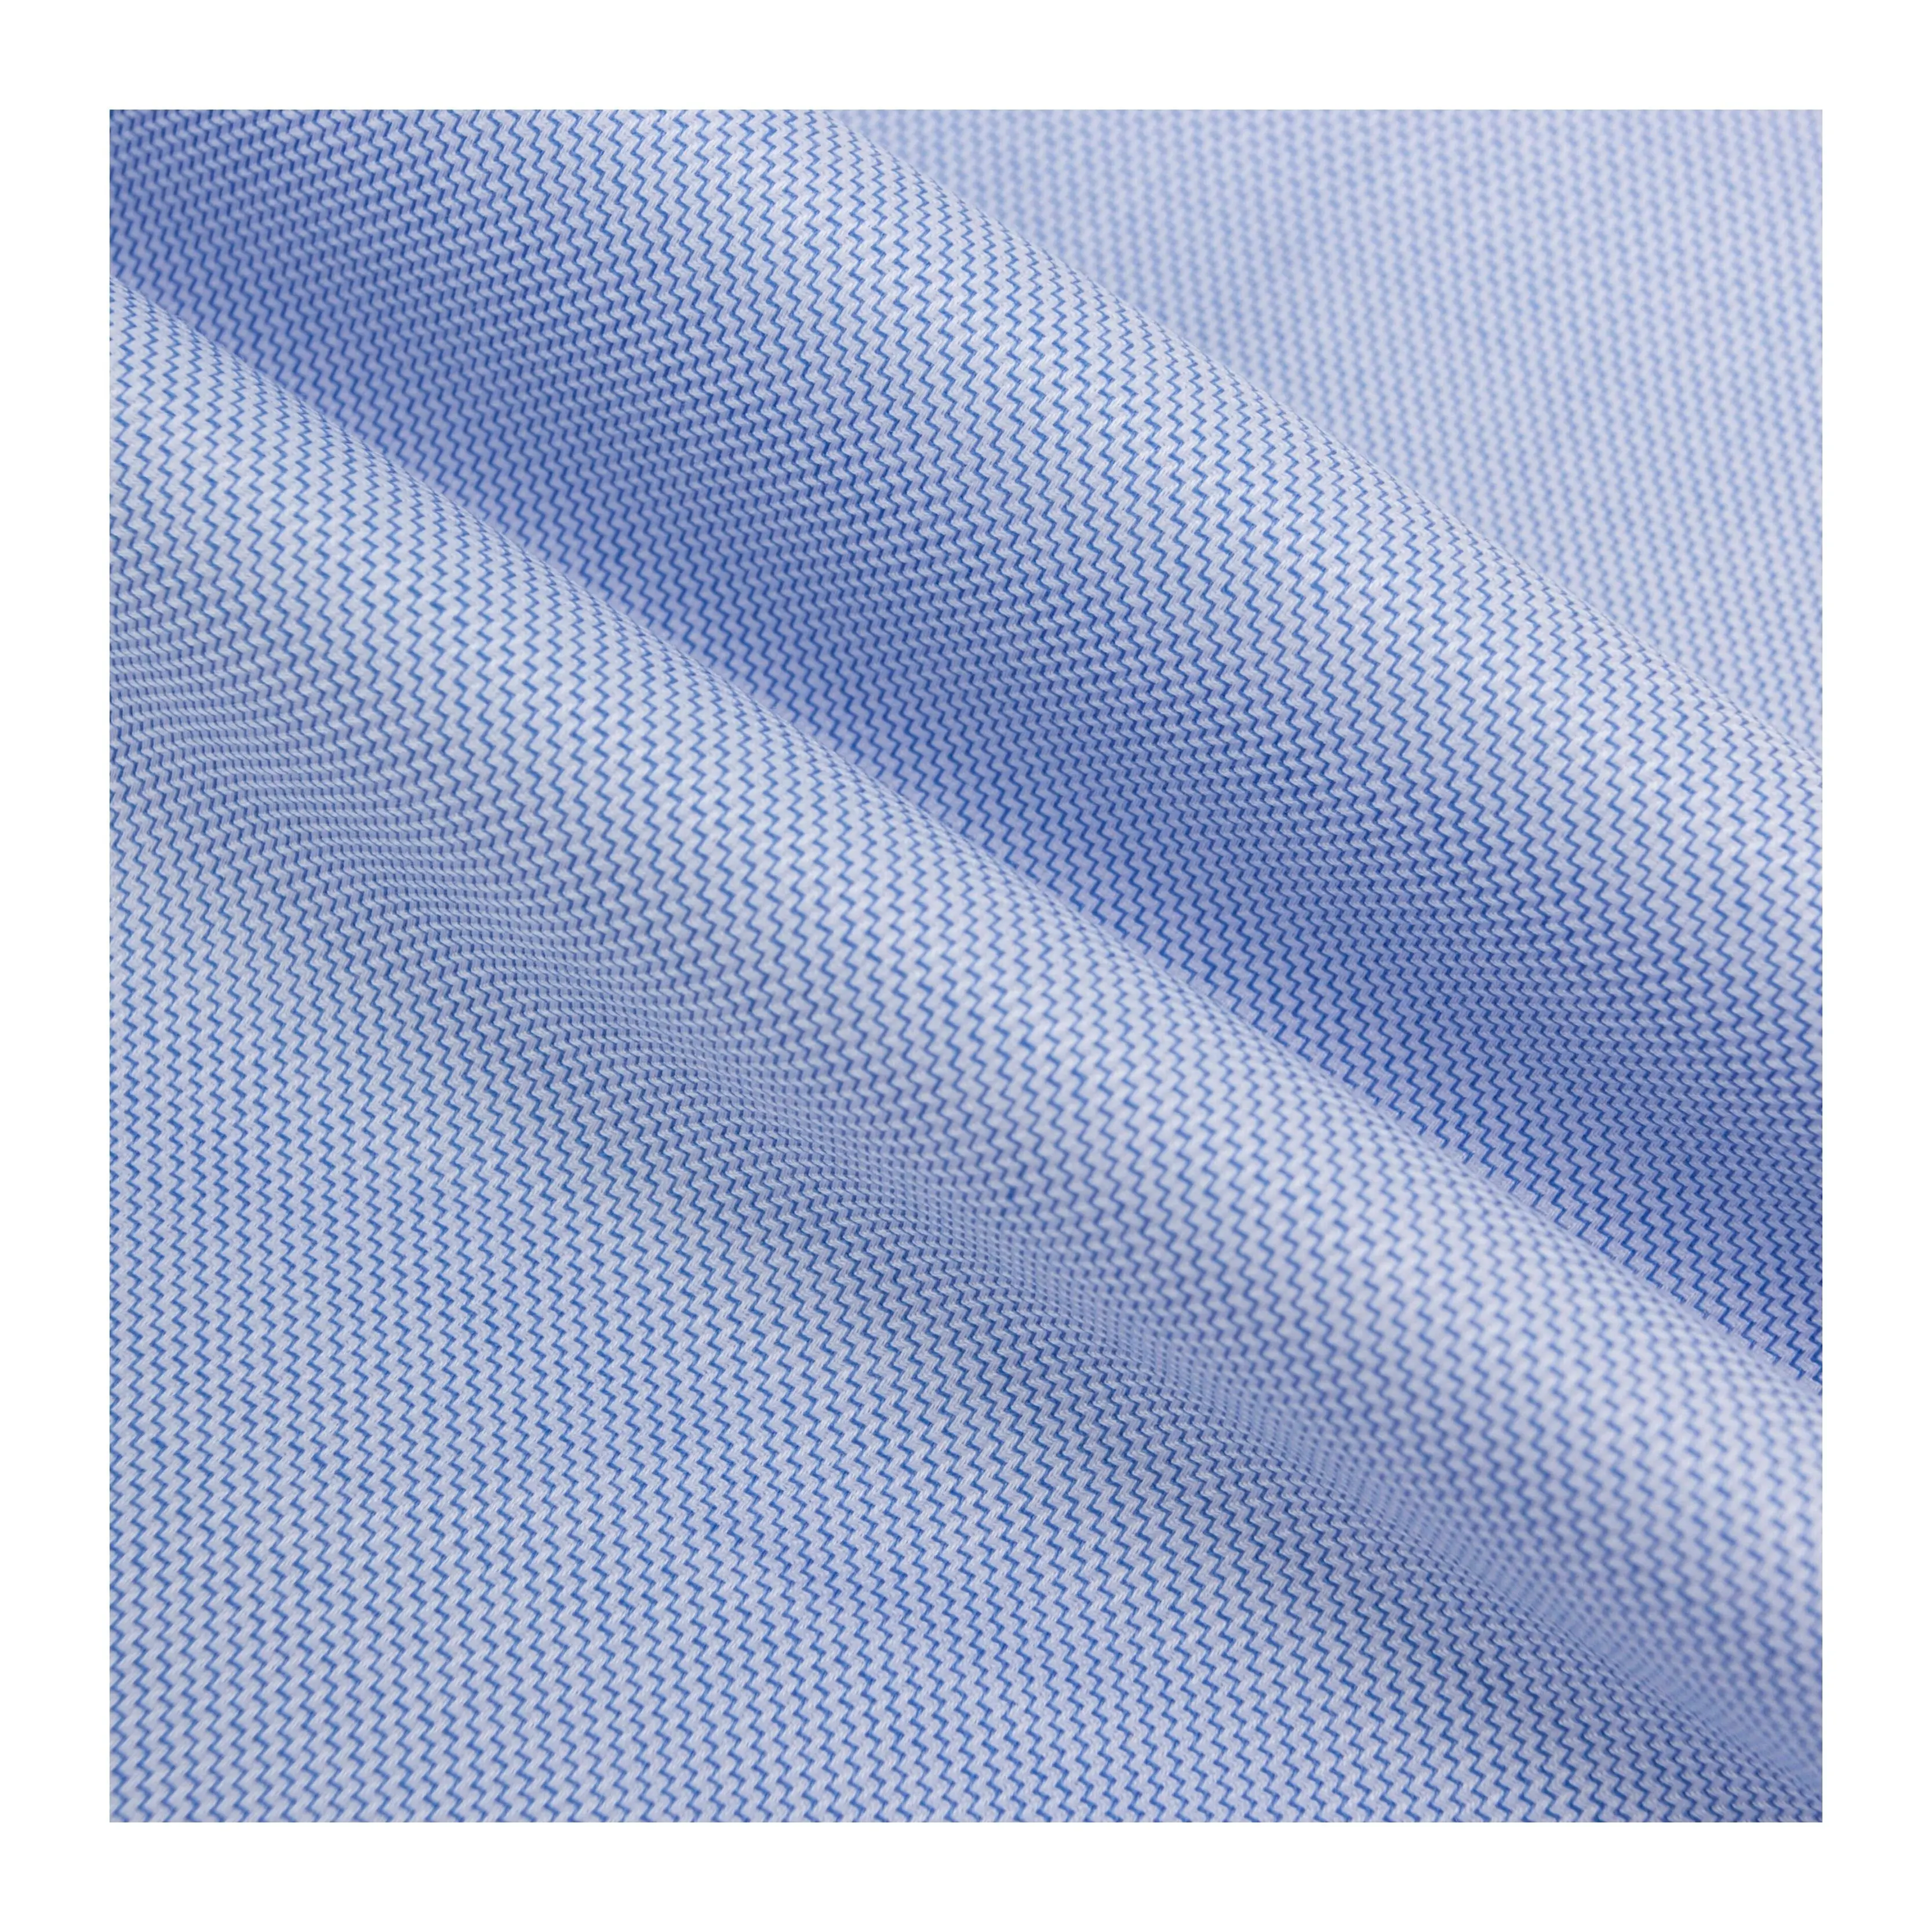 94 China Têxtil Anti-rugas azul e branco líquido onda de amônia 100 tecido de algodão para roupas de luxo